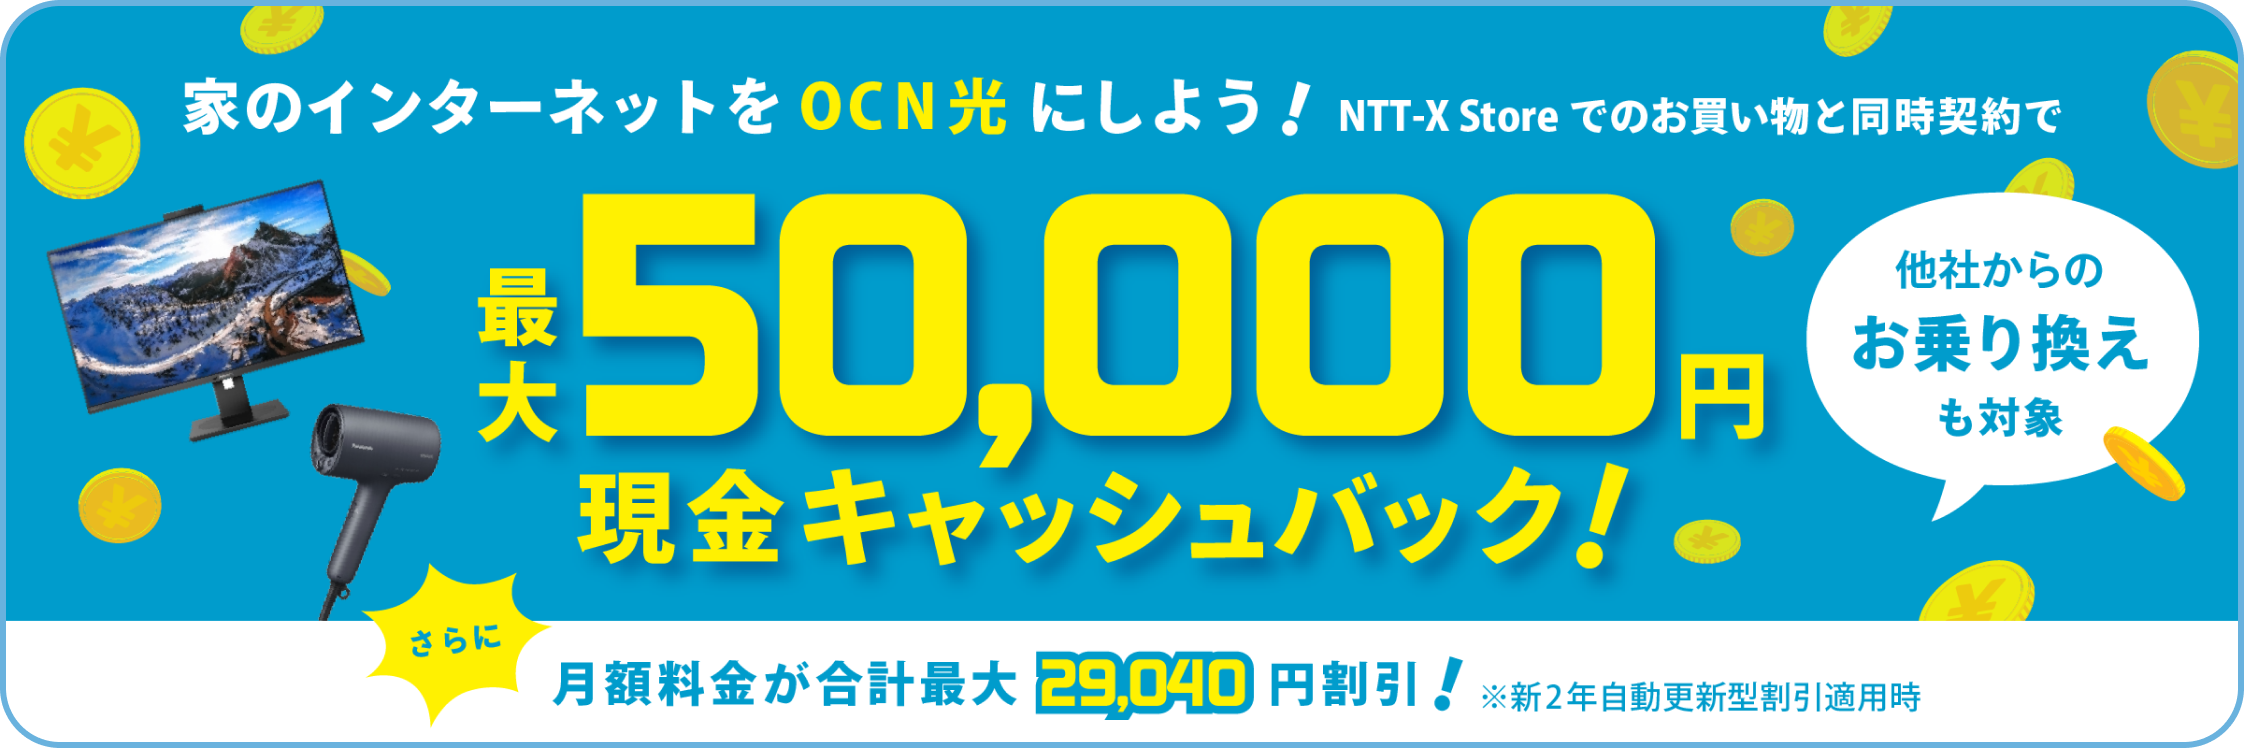 OCN光×NTTX-Store